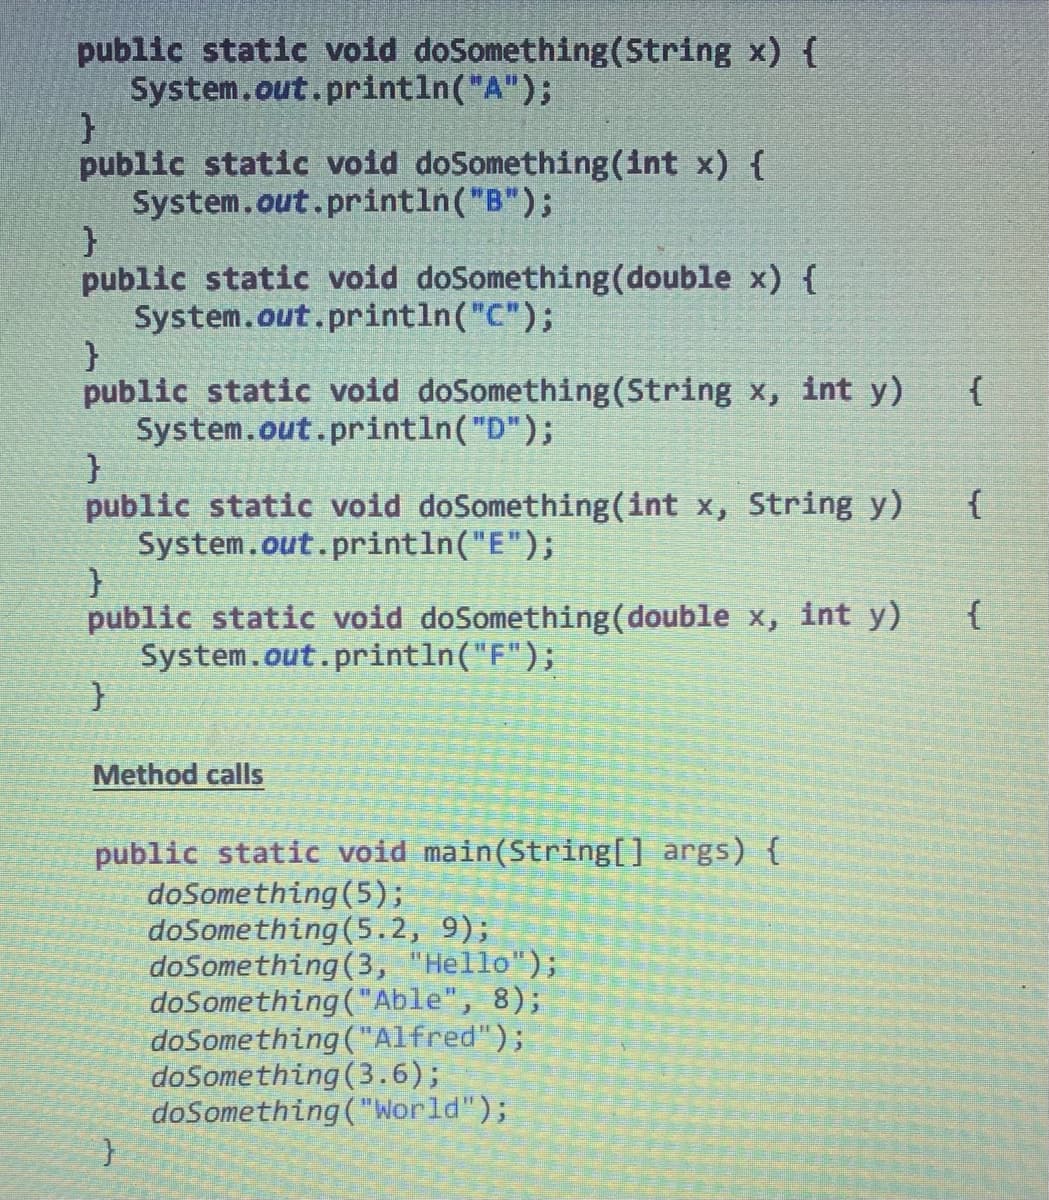 public static void doSomething (String x) {
System.out.println("A");
}
public static void doSomething(int x) {
System.out.println("B");
}
public static void doSomething (double x) {
System.out.println("C");
}
public static void doSomething (String x, int y)
System.out.println("D");
}
public static void doSomething(int x, String y)
System.out.println("E");
}
public static void doSomething (double x, int y)
System.out.println("F");
}
Method calls
public static void main(String[] args) {
doSomething (5);
doSomething (5.2, 9);
doSomething (3, "Hello");
doSomething ("Able", 8);
doSomething ("Alfred");
doSomething (3.6);
doSomething ("World");
}
{
{
{